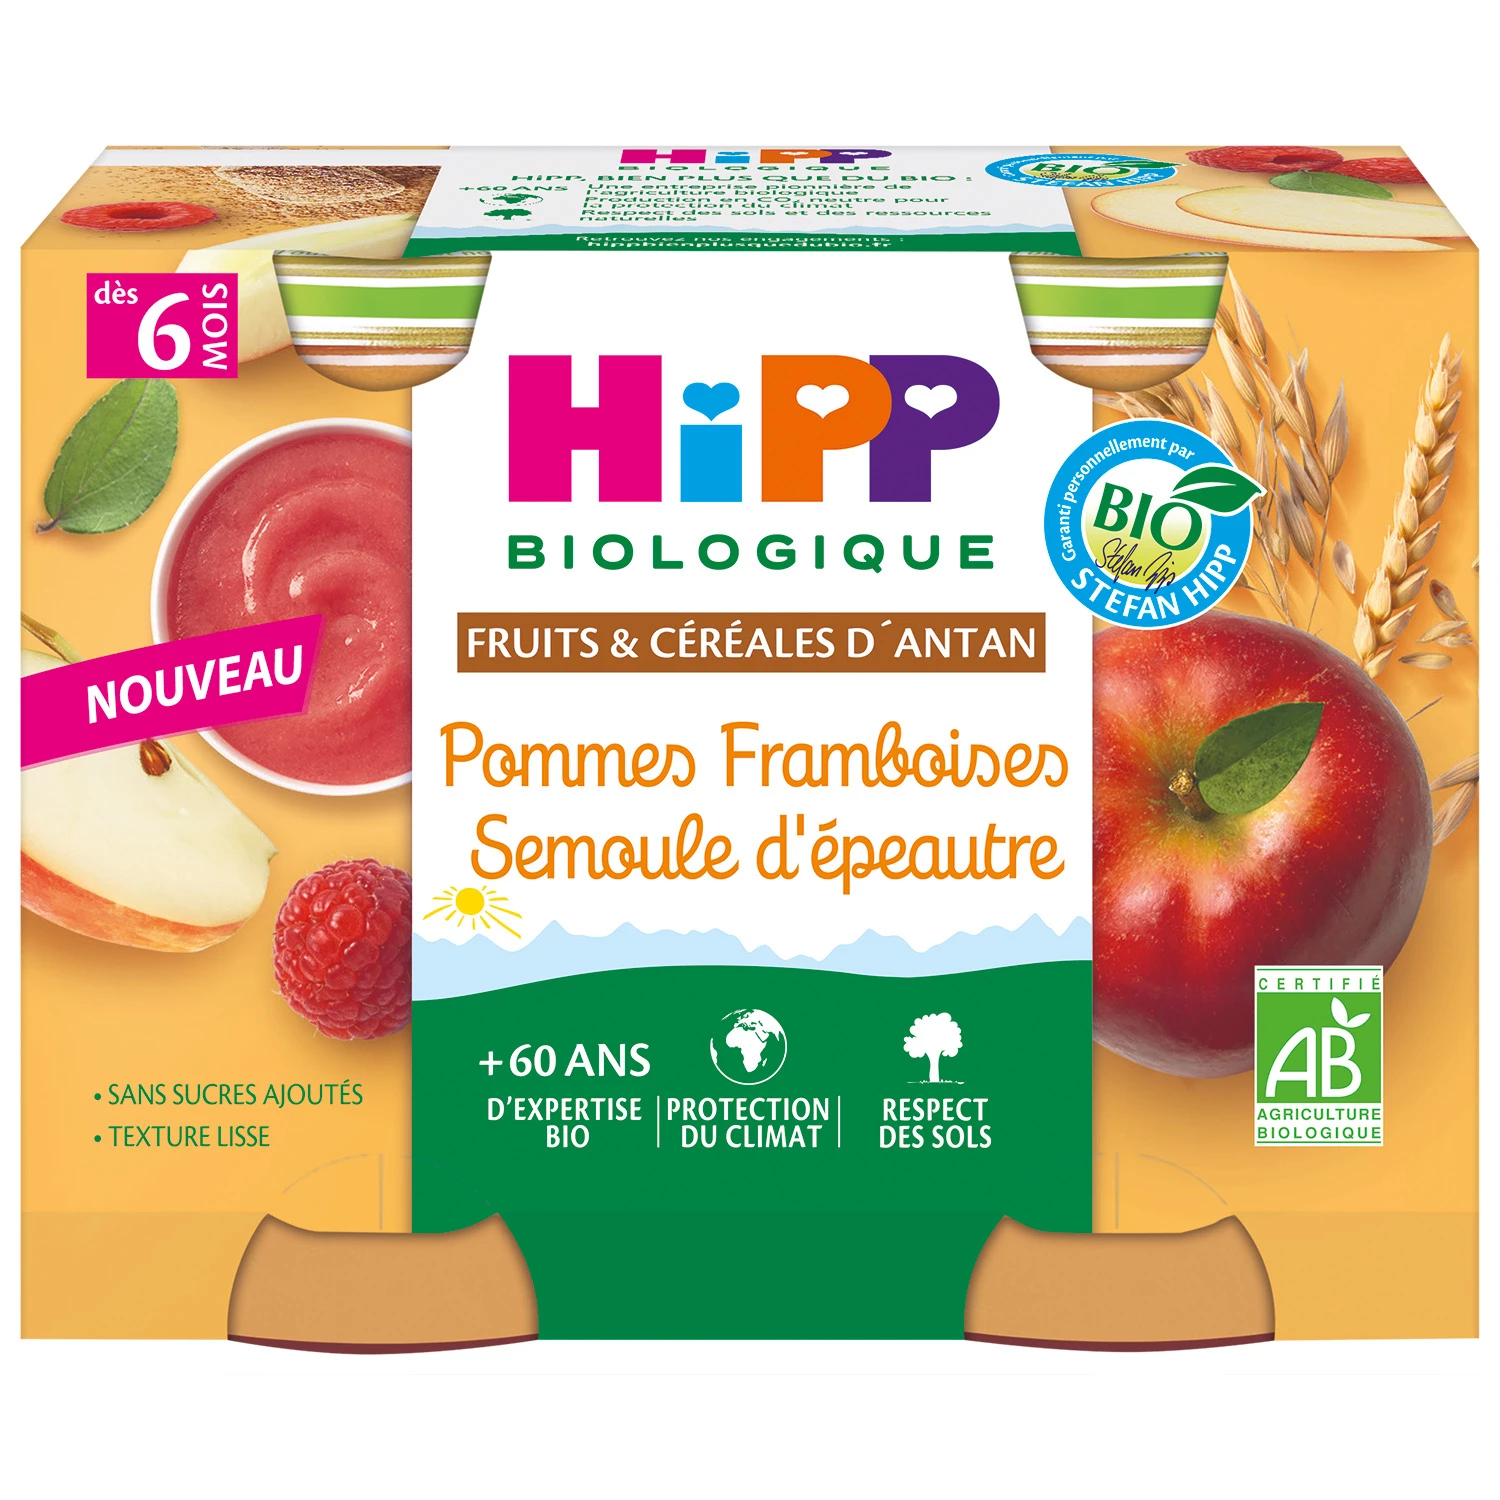 Petit pot Pommes Framboises semoule d'épeautre Bio, 2x190g, HIPP BioLOGIQUE